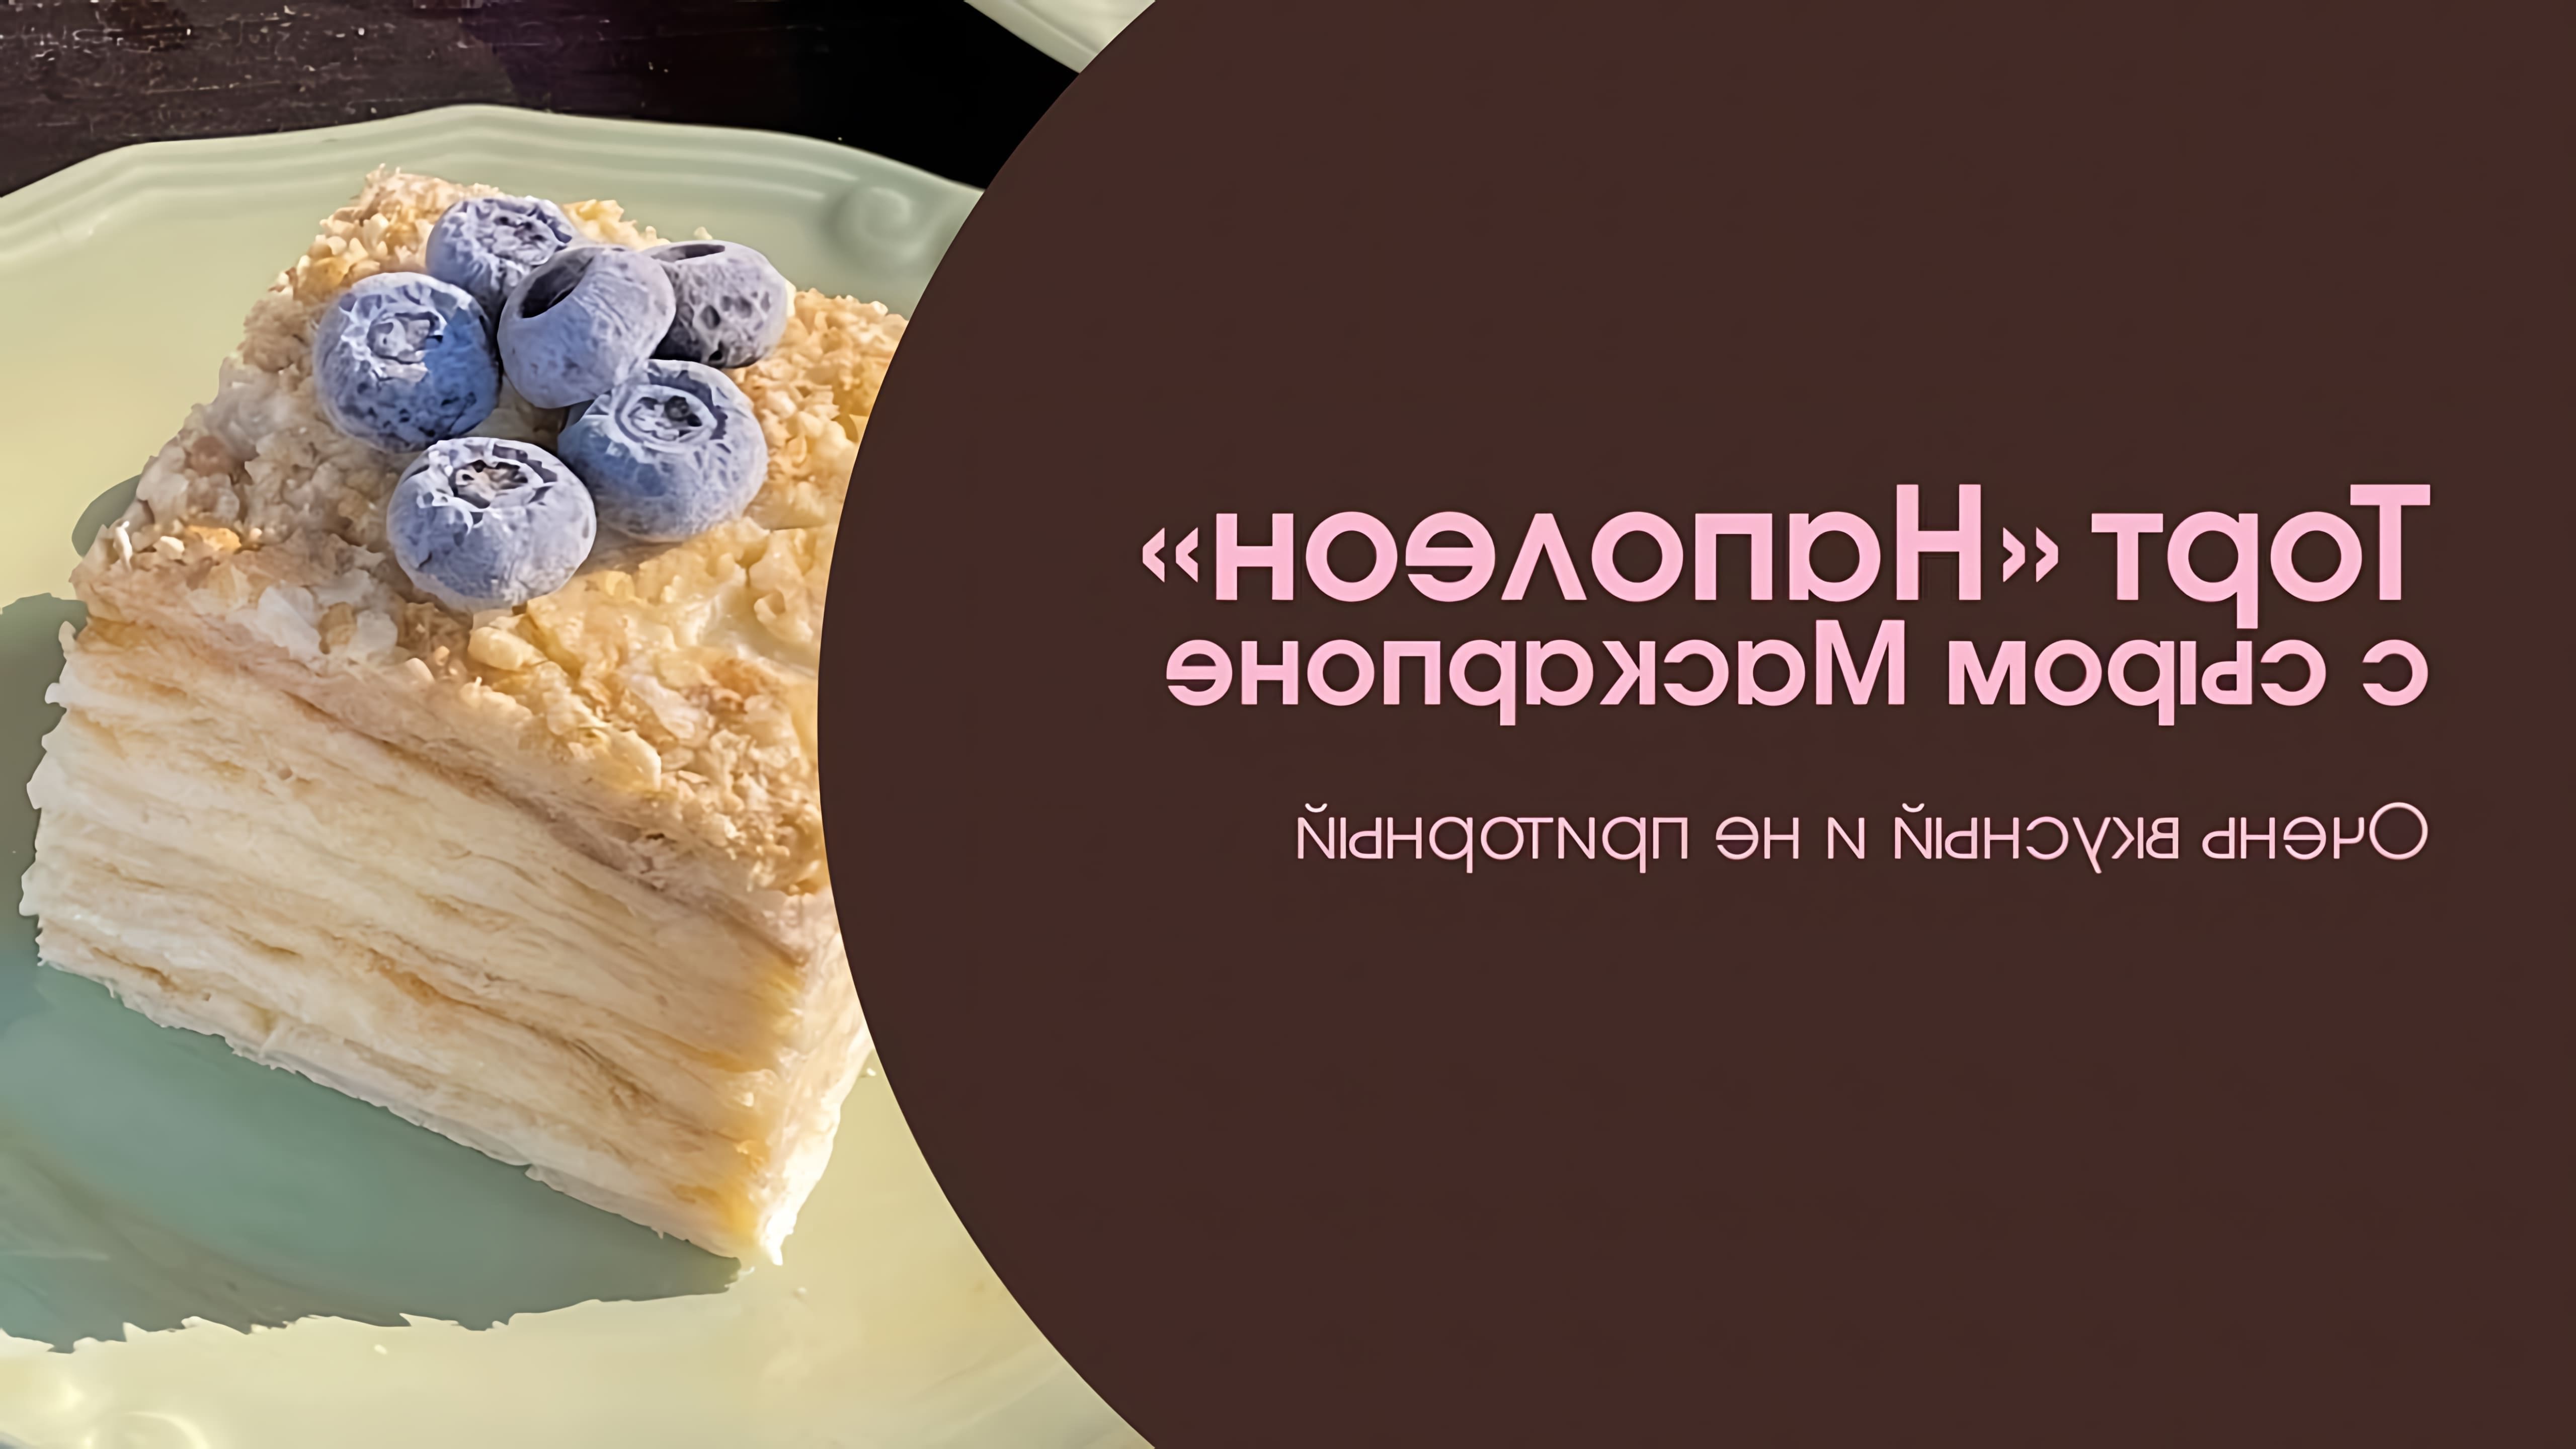 В этом видео представлен рецепт приготовления торта "Наполеон" с сыром Маскарпоне